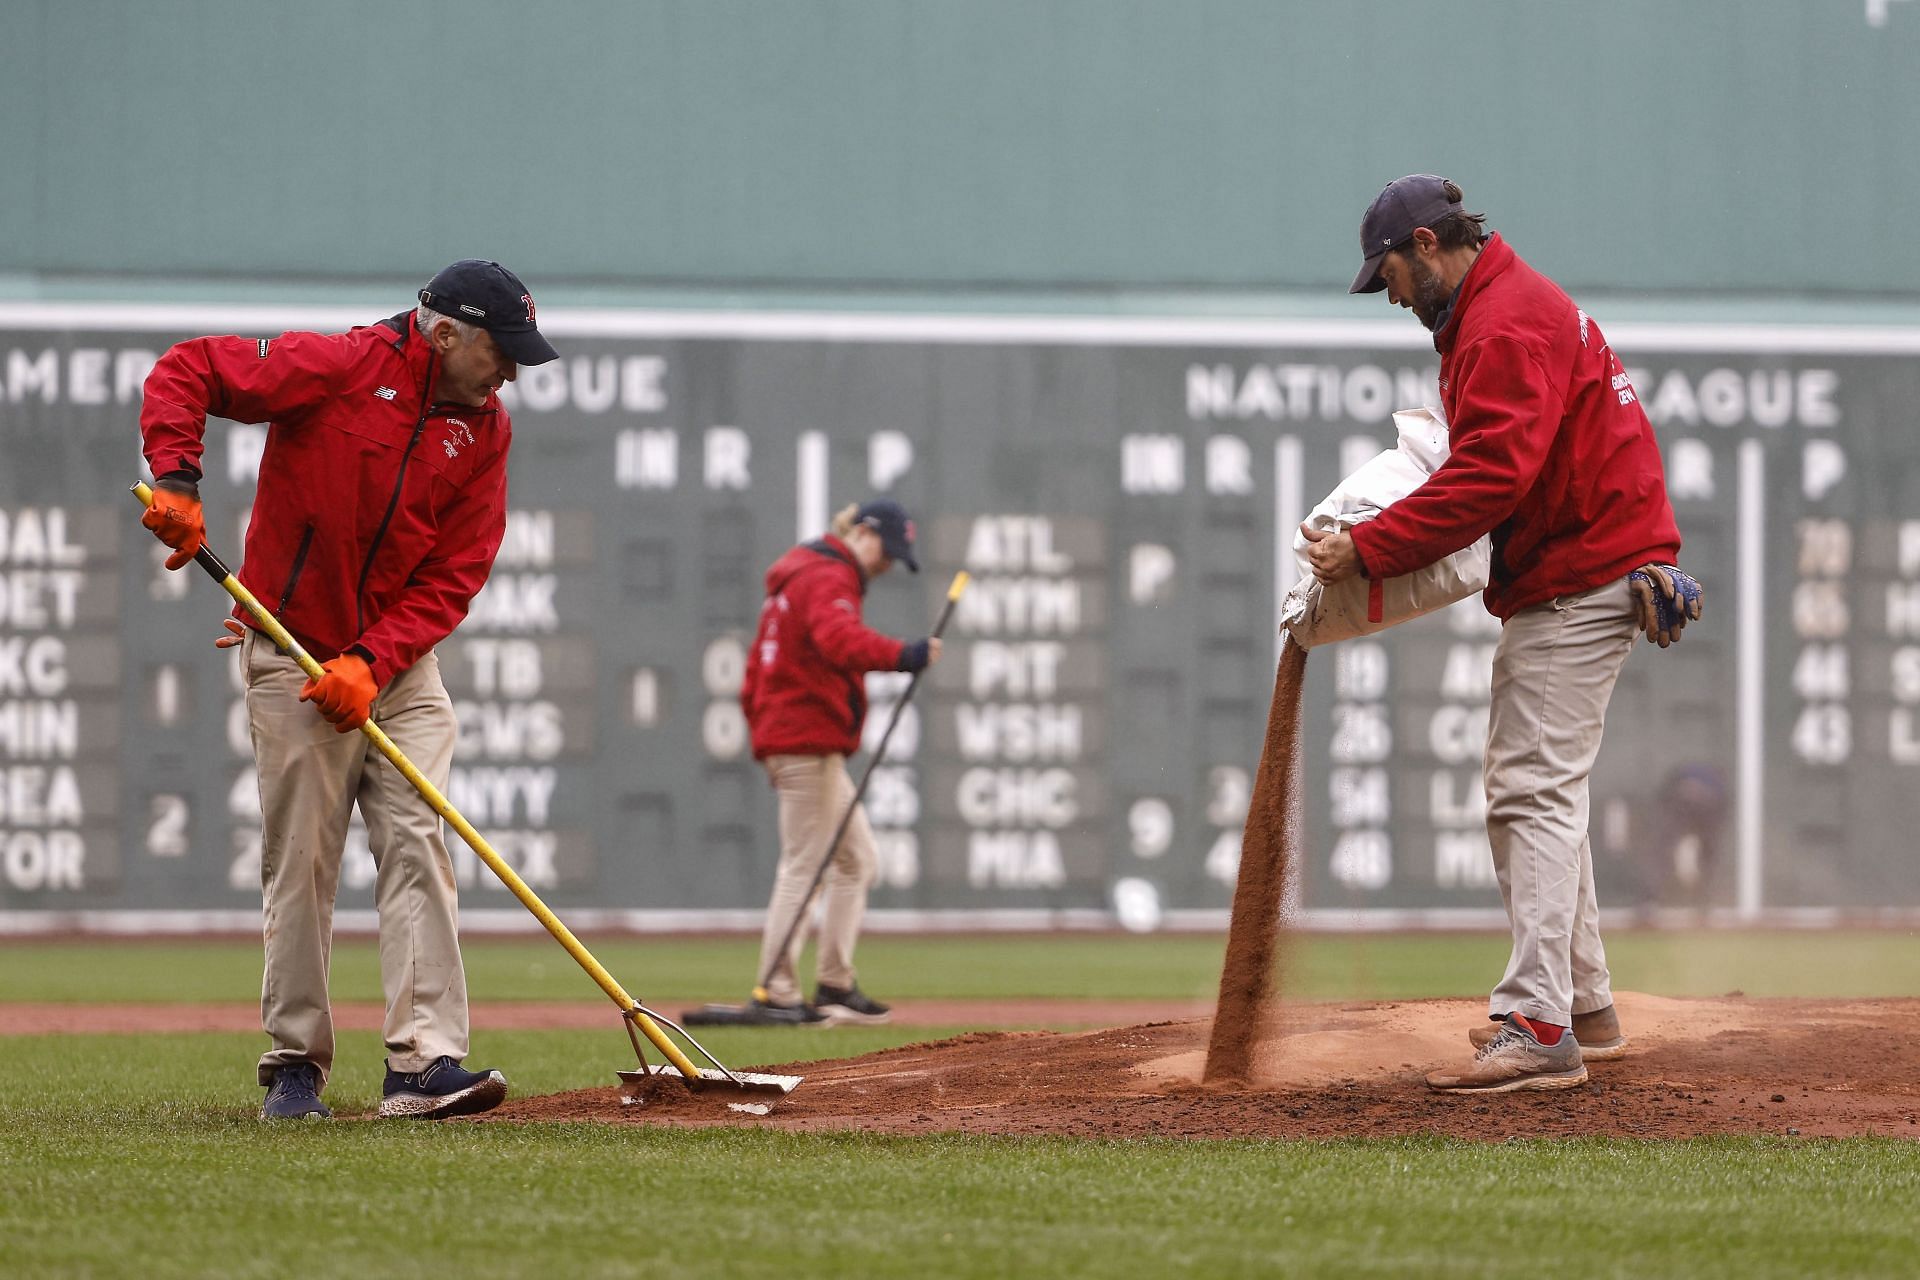 Matt Dermody gets Boston Red Sox call up after homophobic tweets